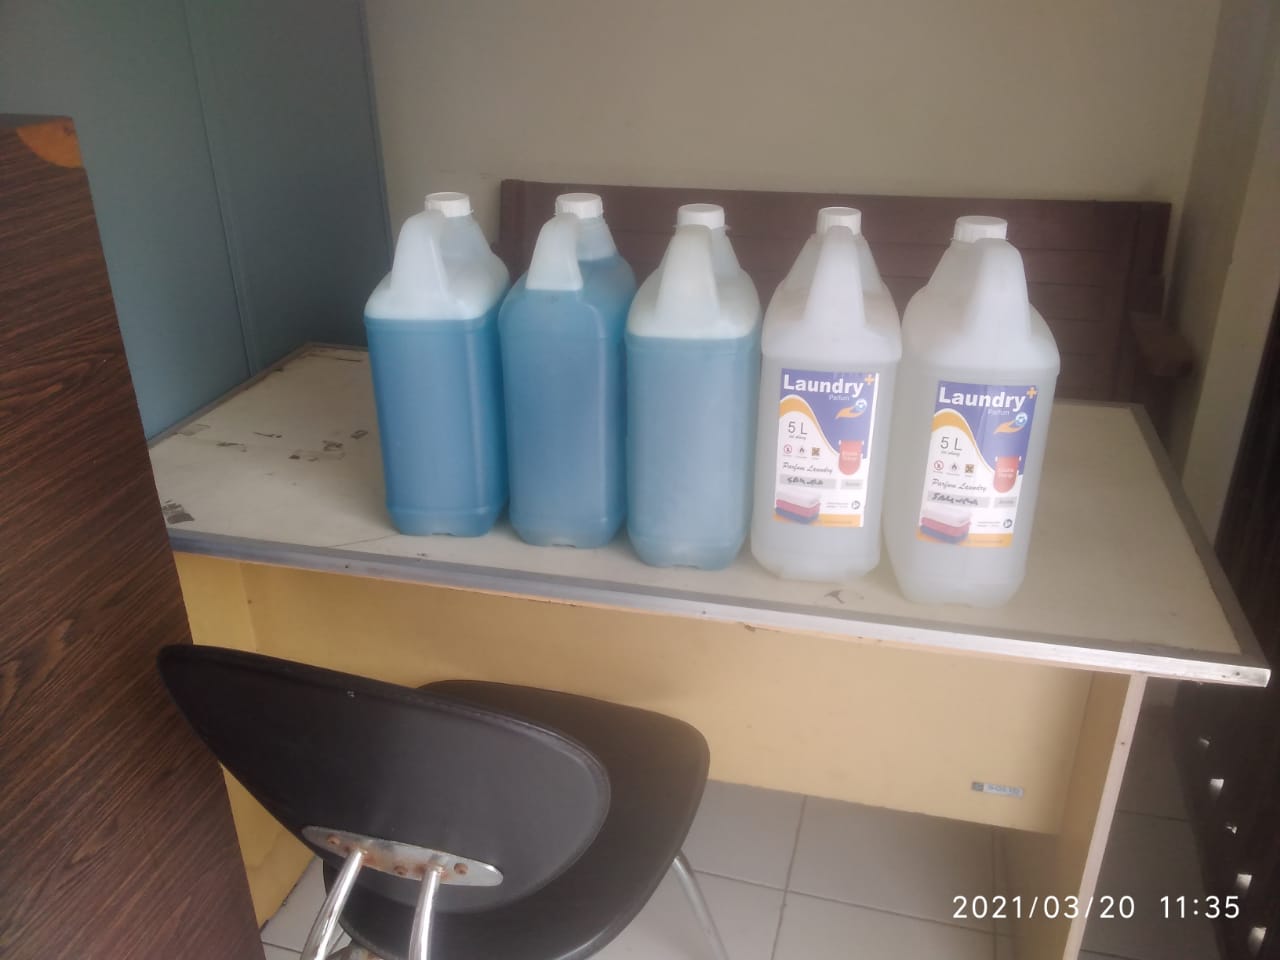 Parfum deterjen laundry di Bekasi